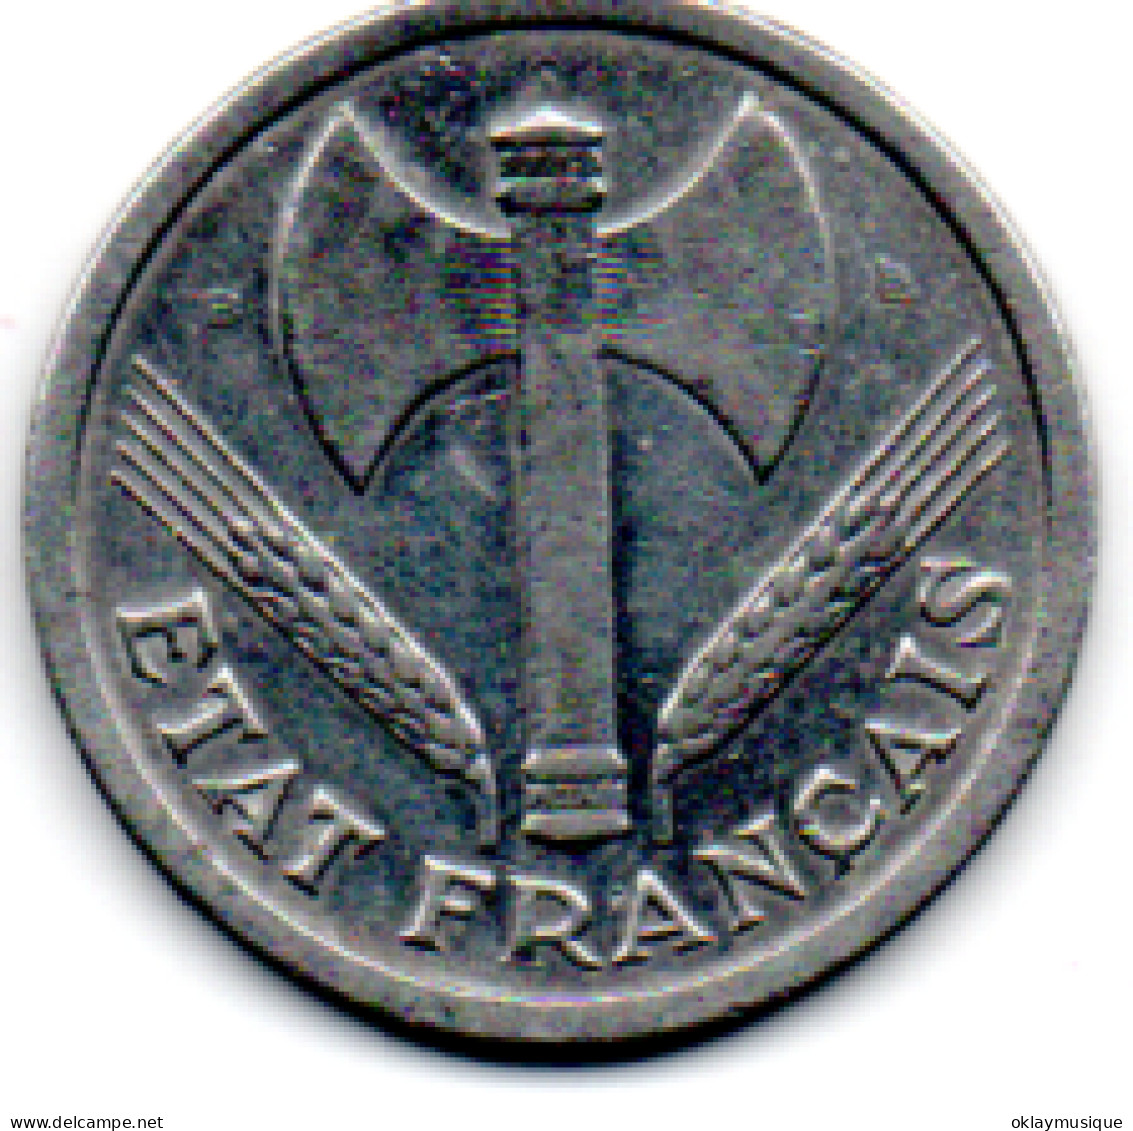 2 Francs 1943 Bazor - 1 Franc